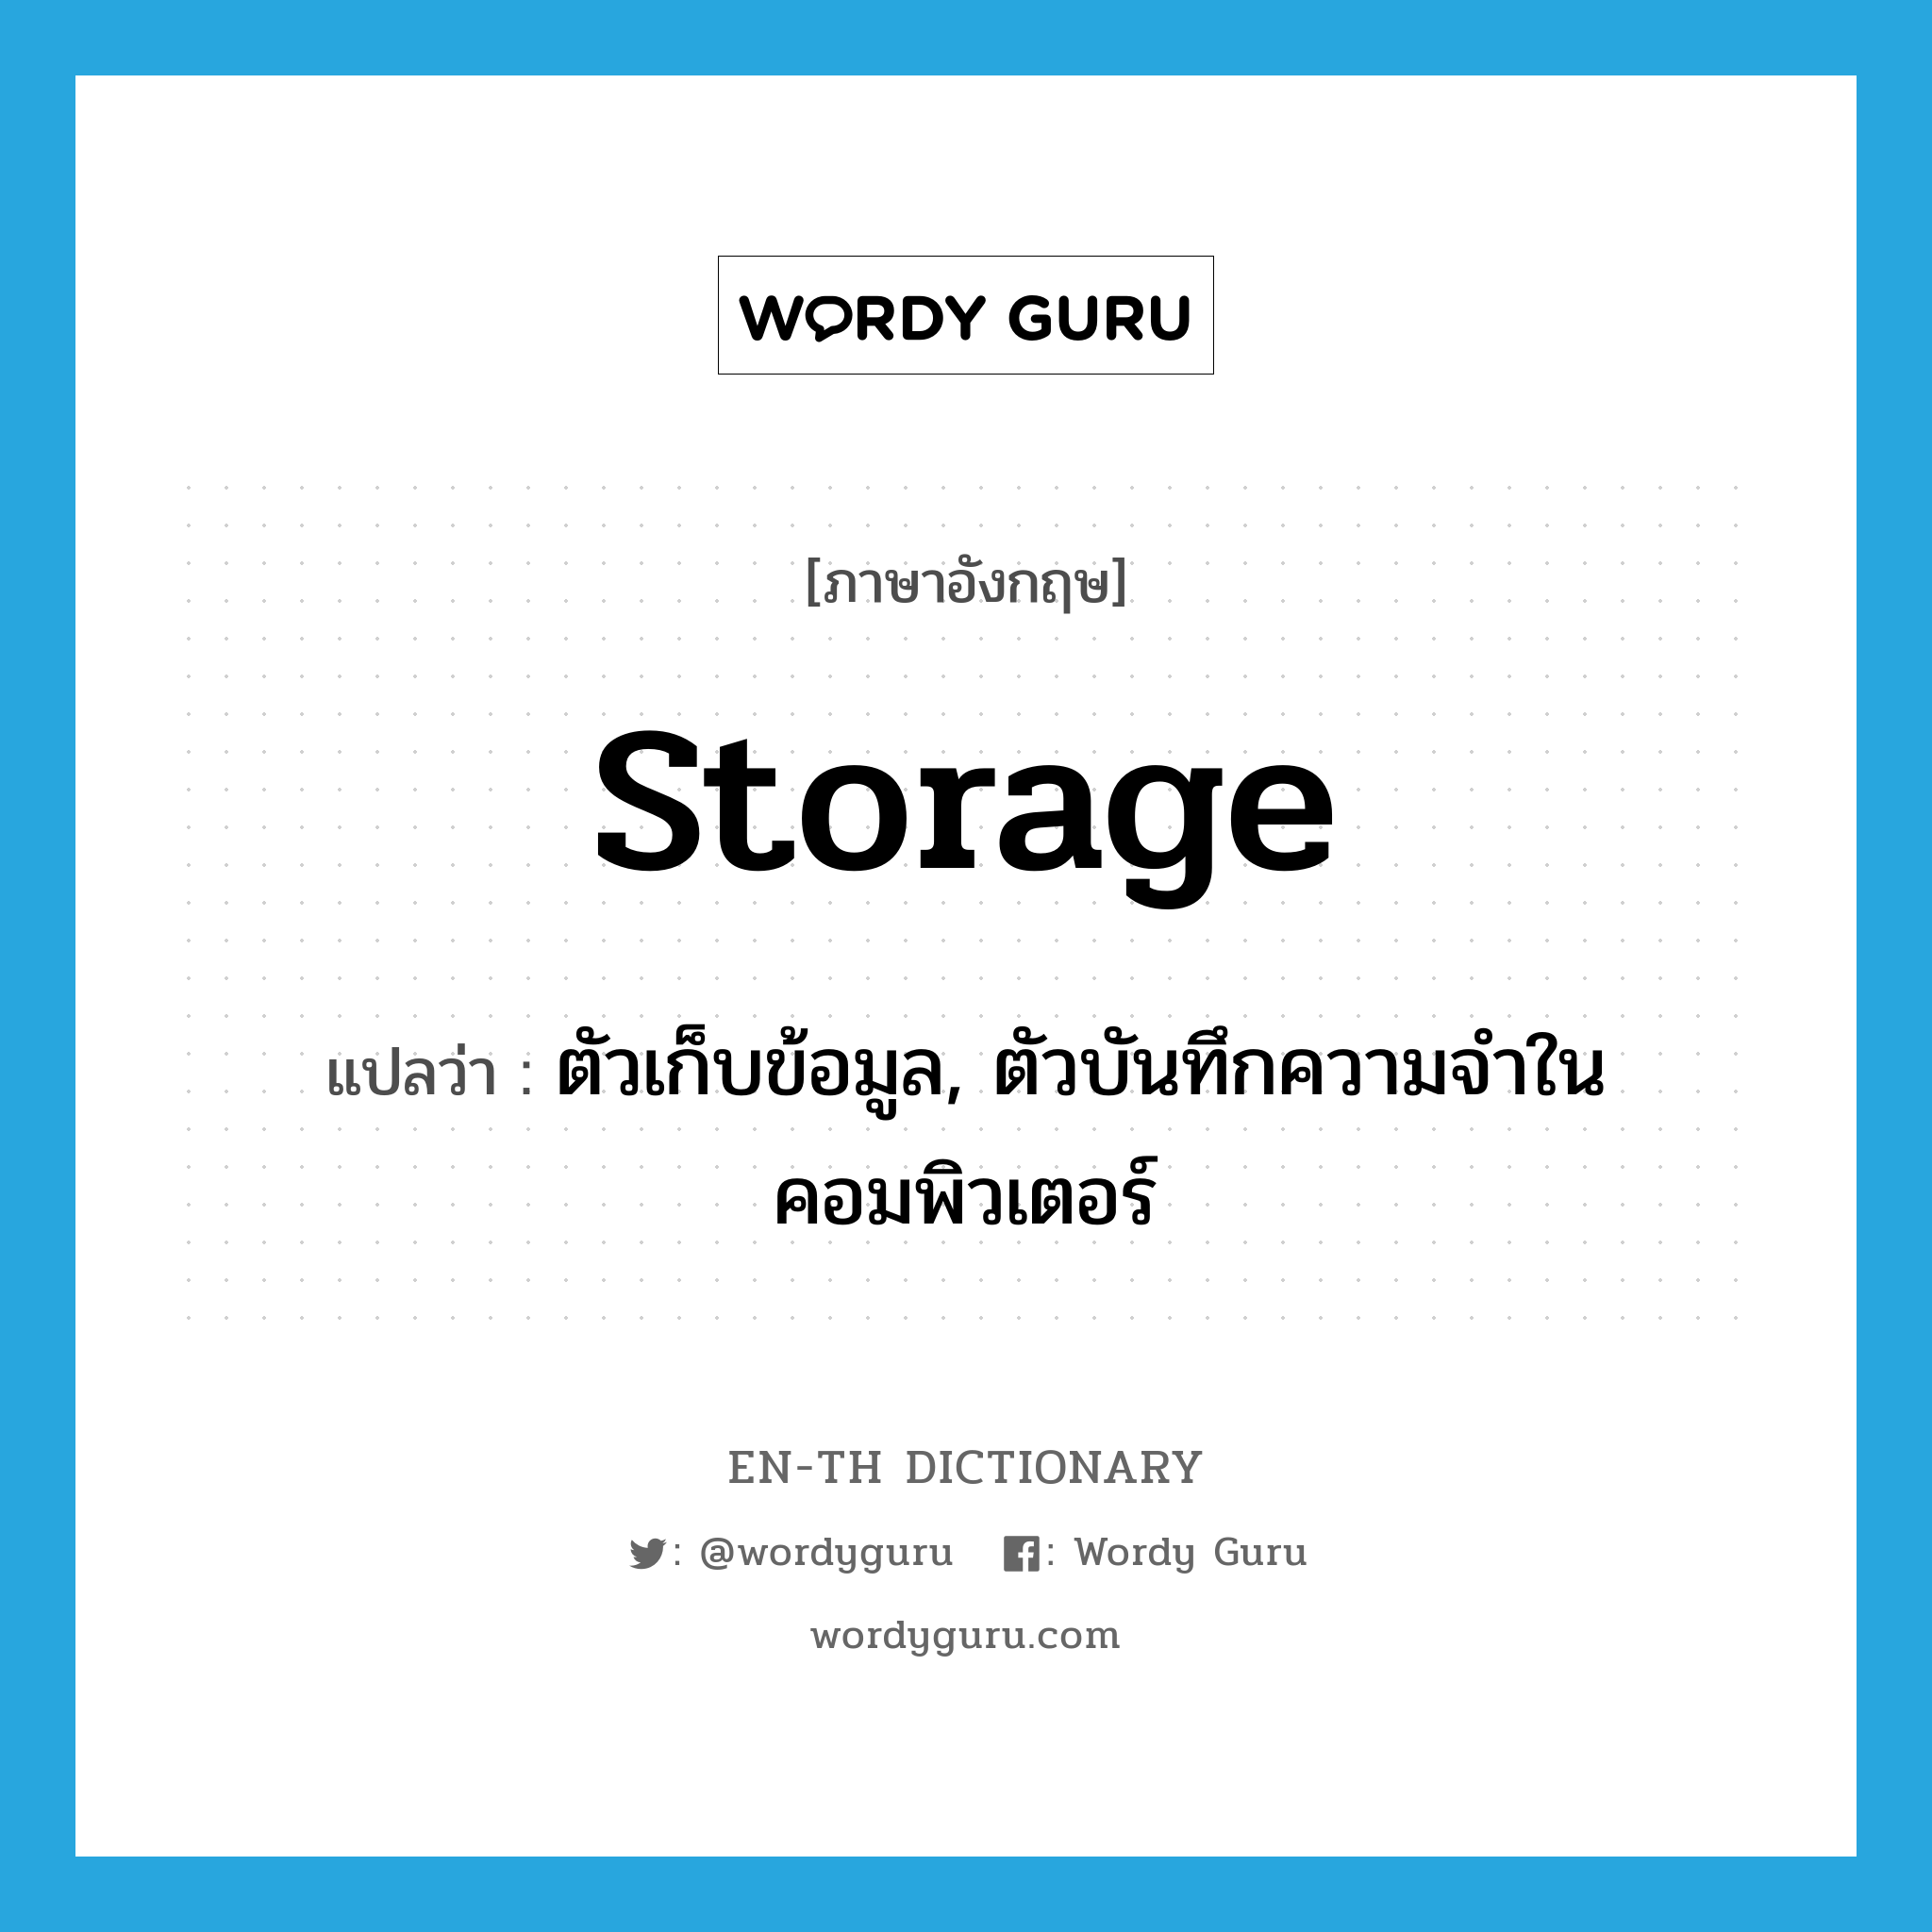 storage แปลว่า?, คำศัพท์ภาษาอังกฤษ storage แปลว่า ตัวเก็บข้อมูล, ตัวบันทึกความจำในคอมพิวเตอร์ ประเภท N หมวด N